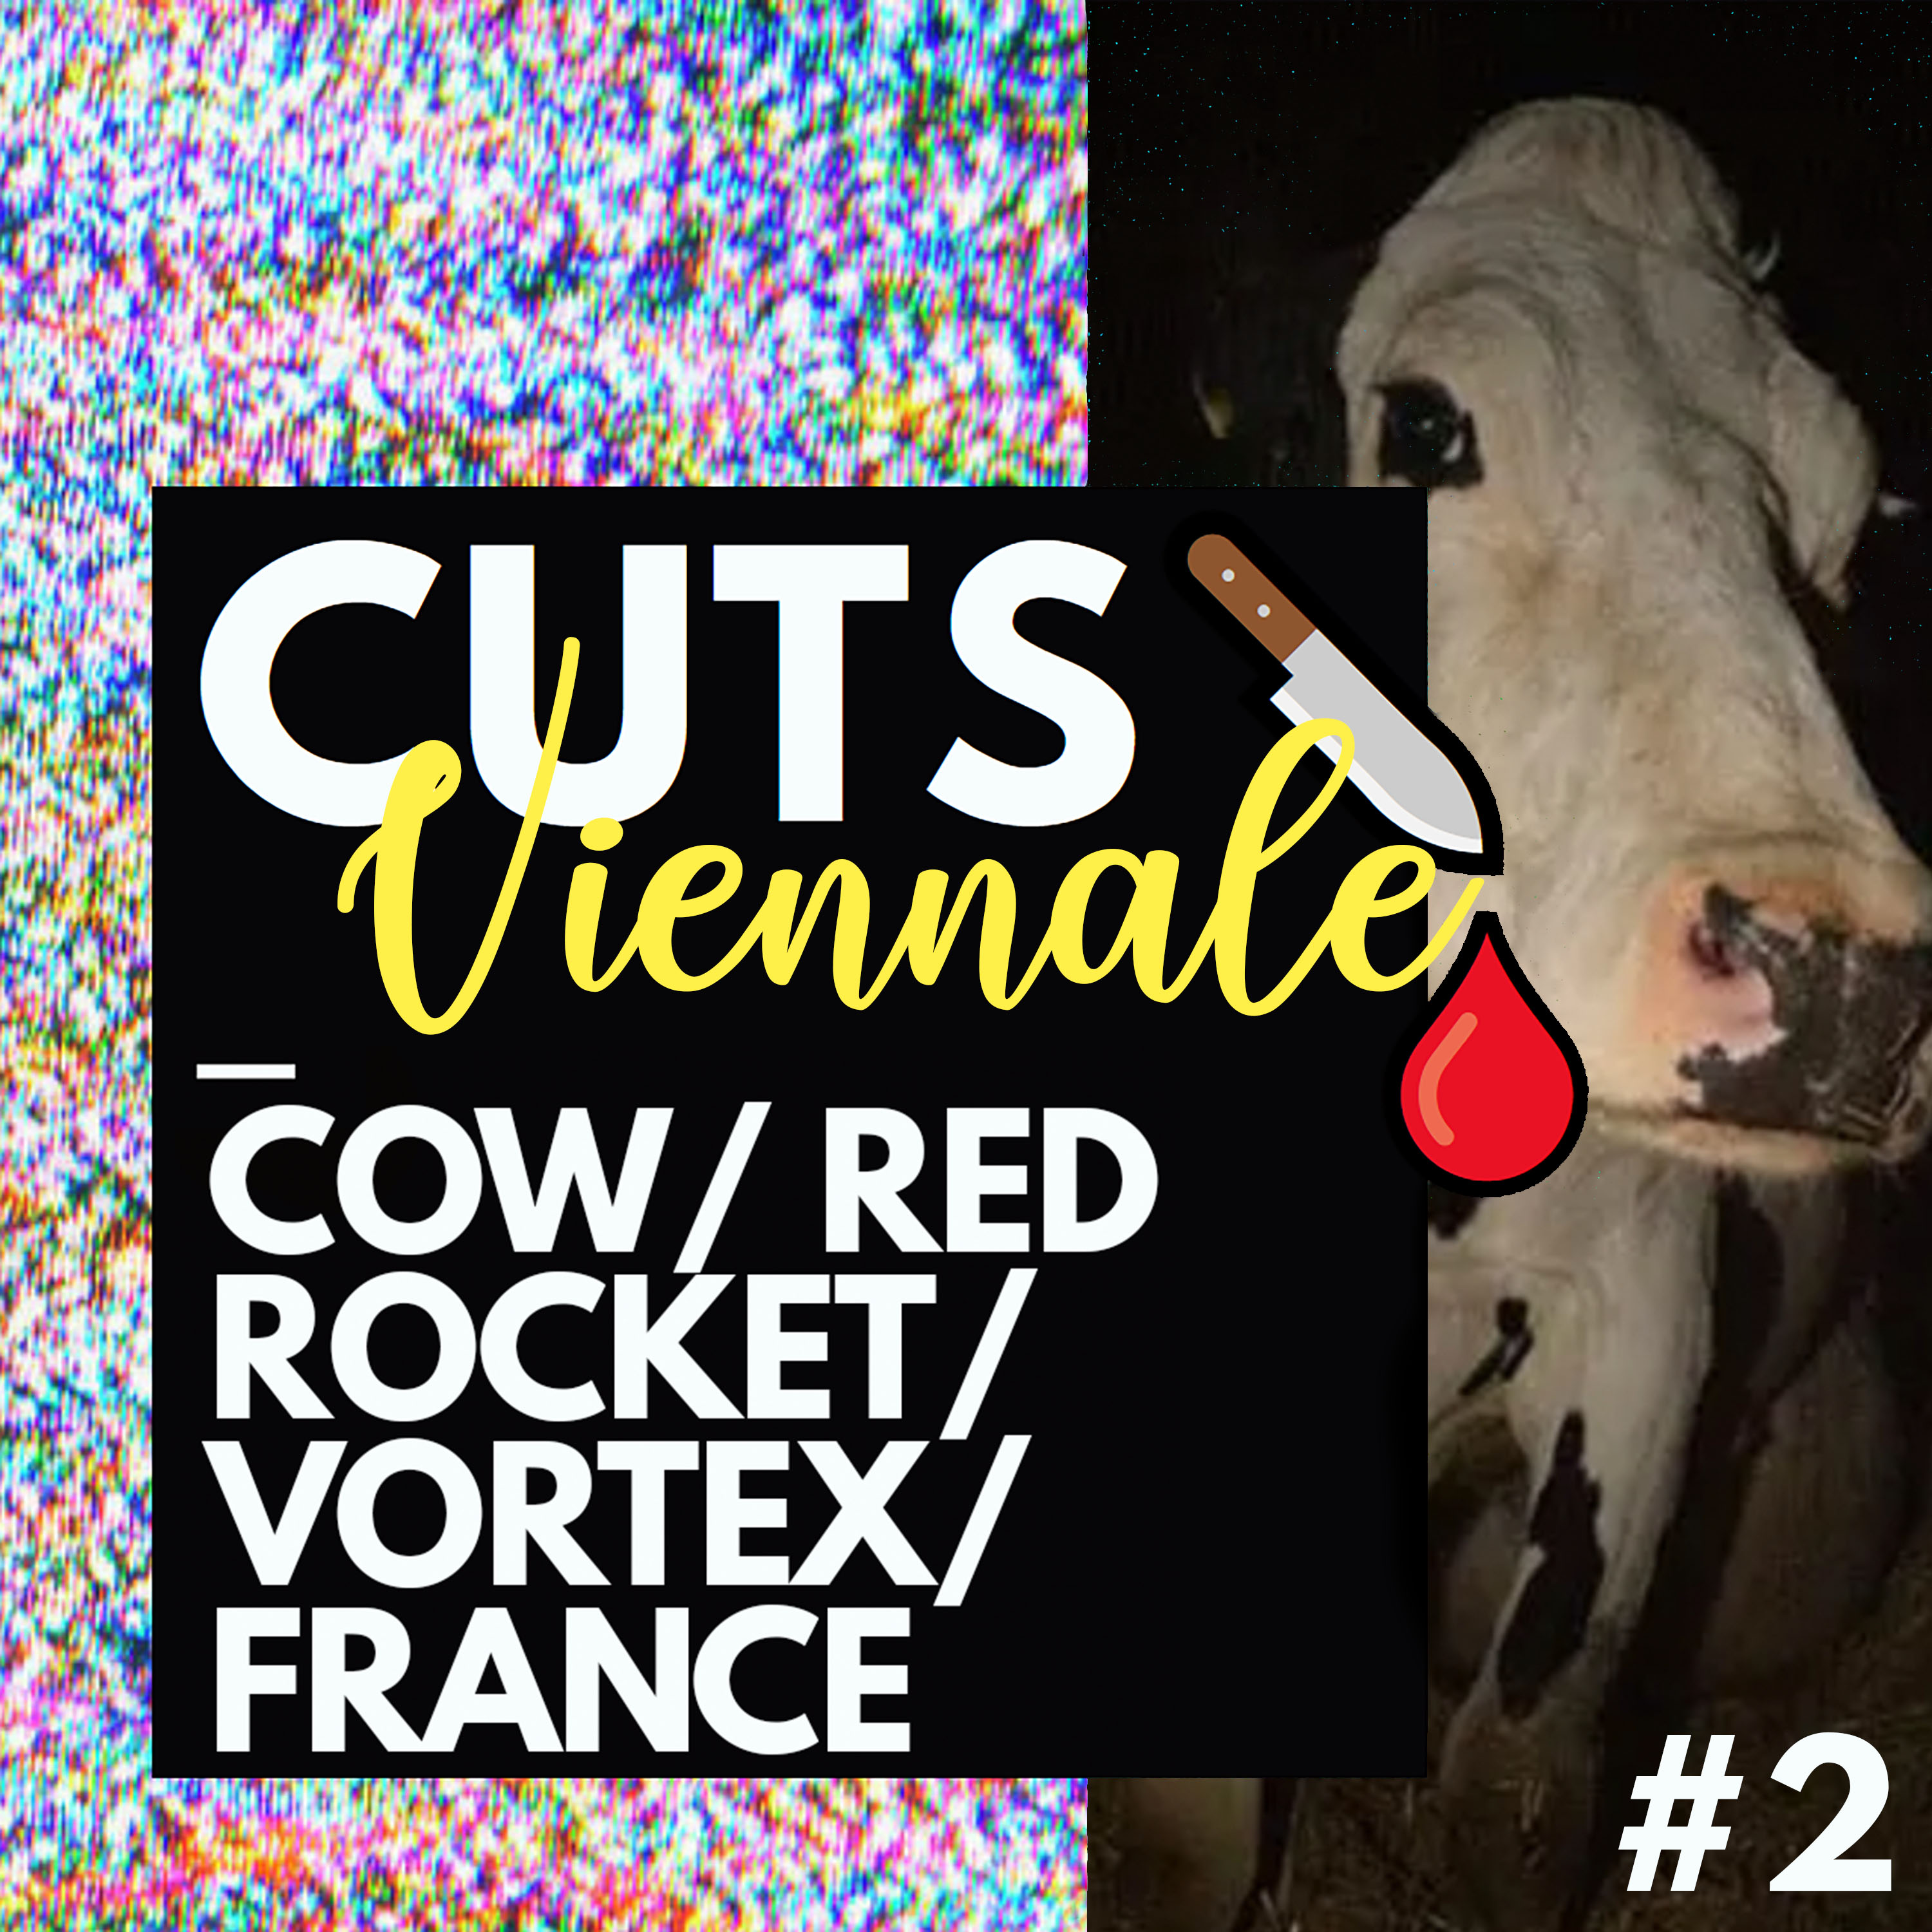 Viennale #2 - Cow, France, Red Rocket, Vortex